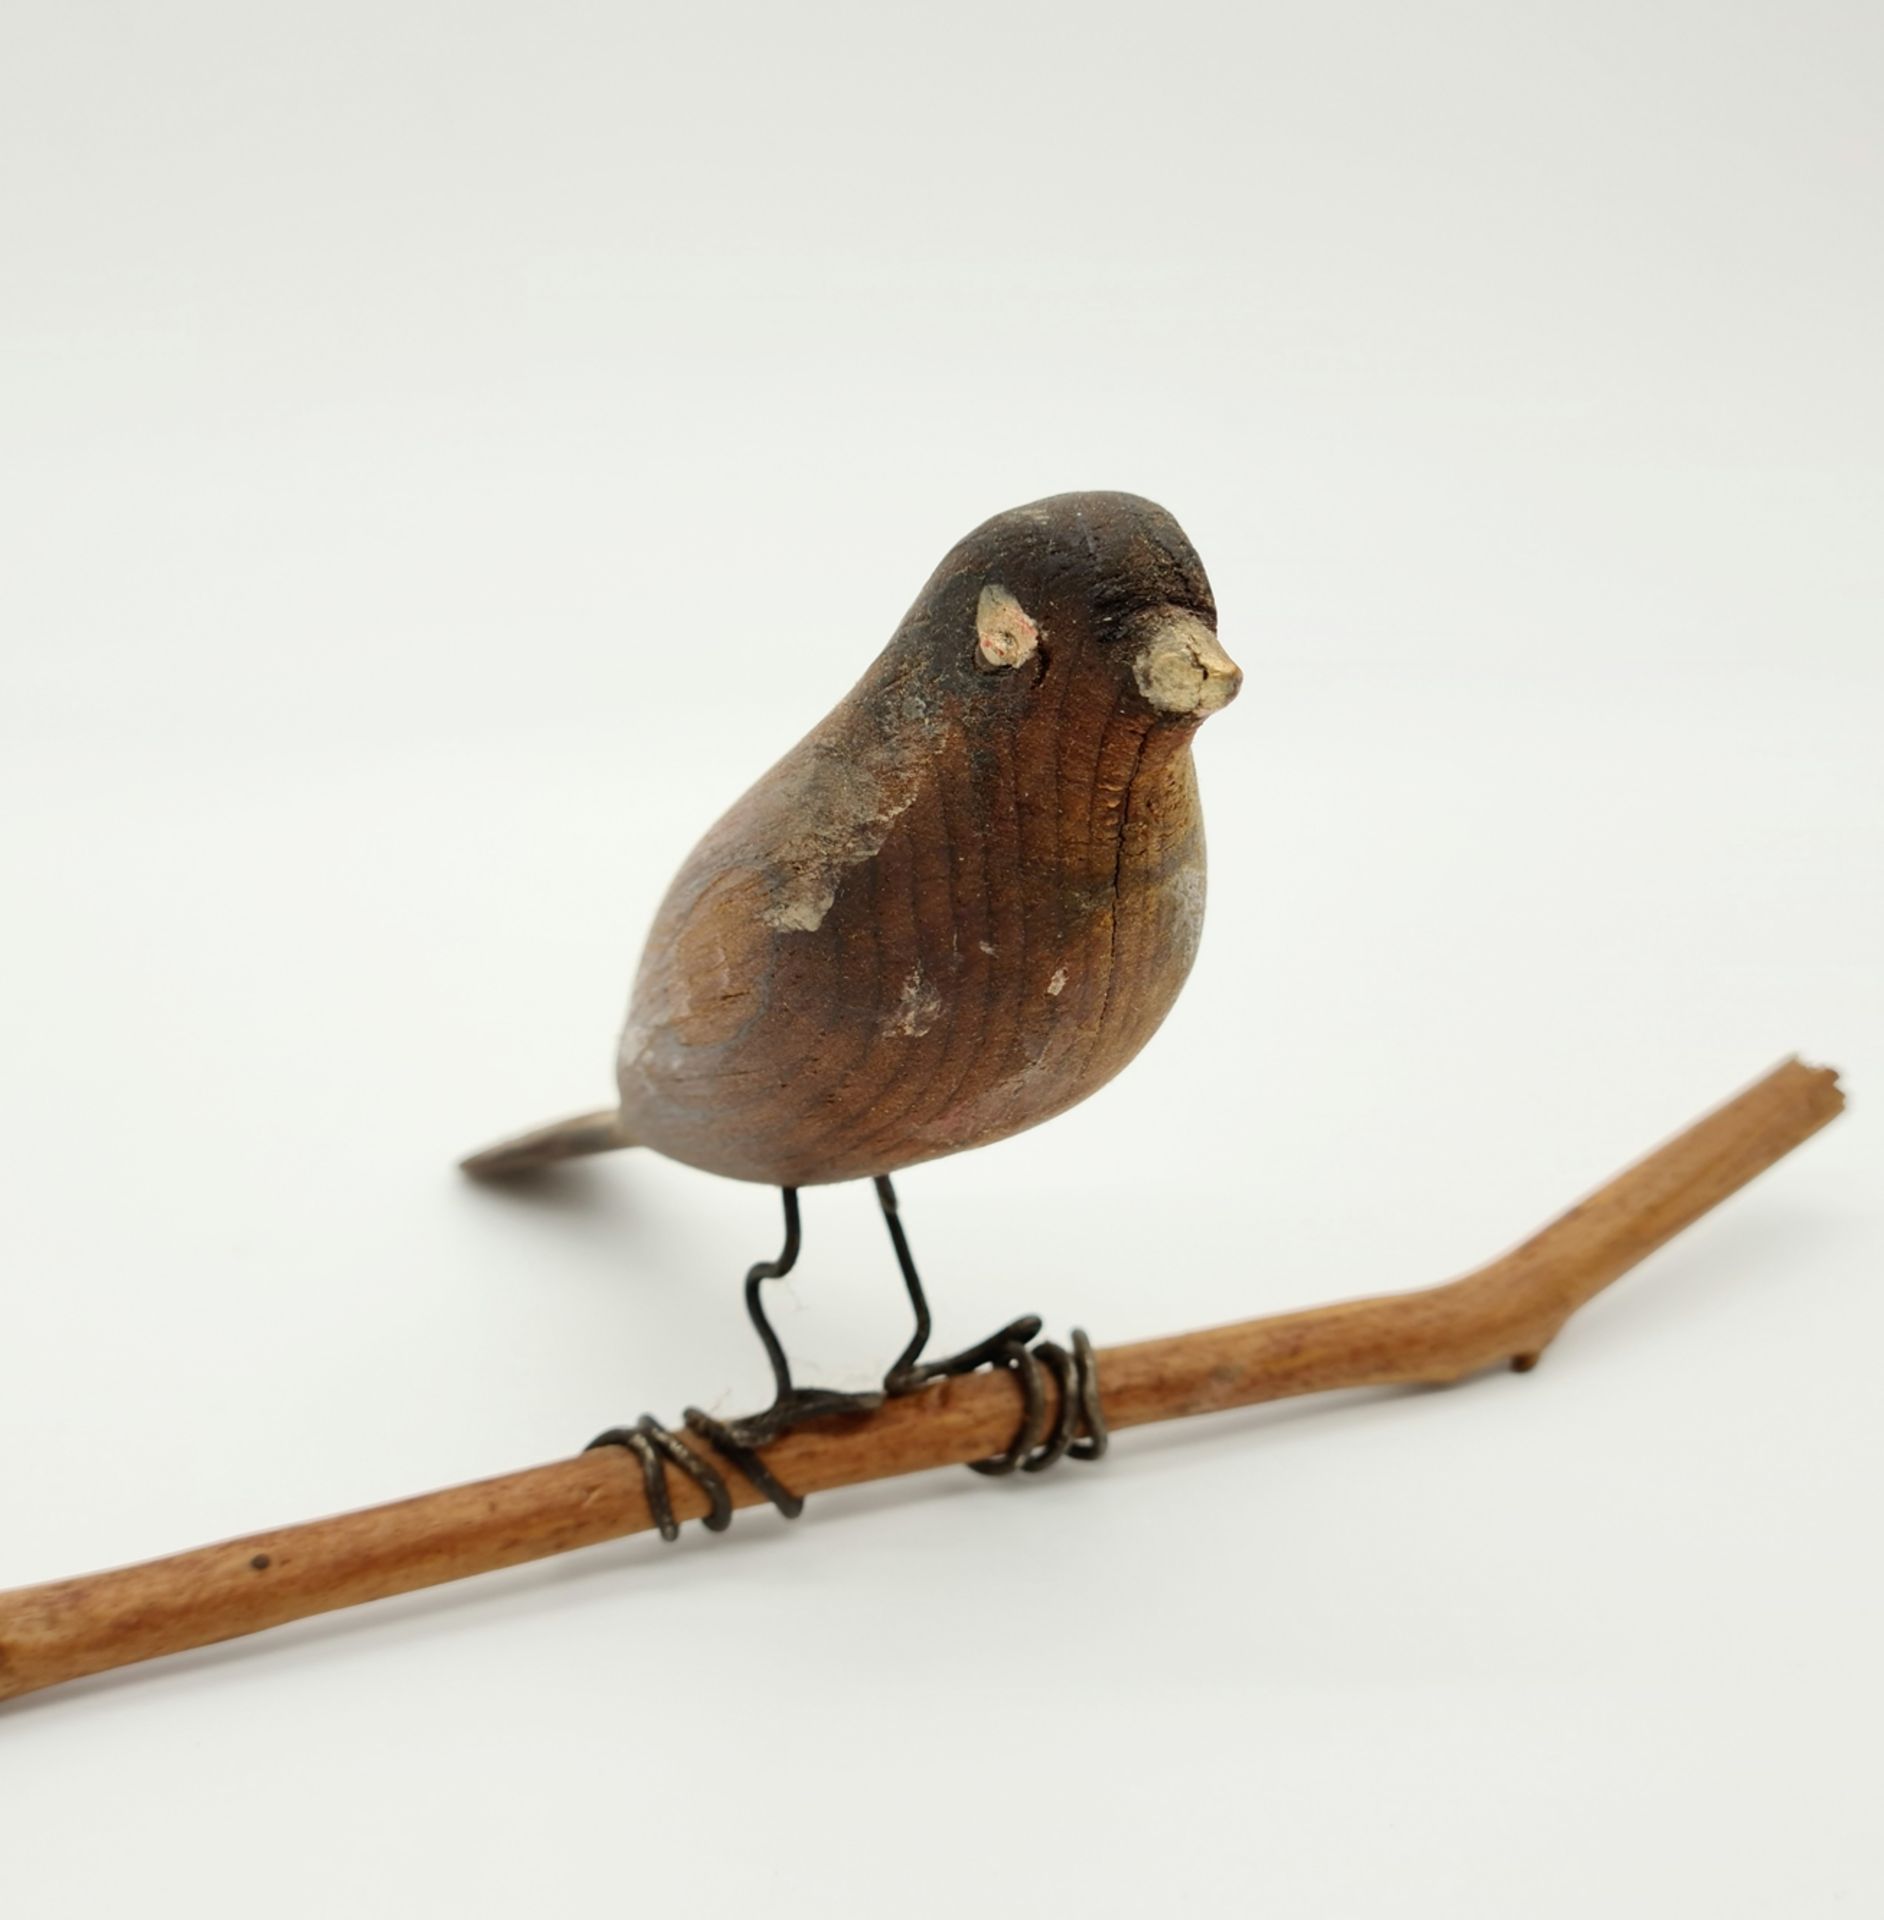 Vögel, Holz bunt bemalt, Vogellänge je: 10cm, 12 ,5 cm, Ende 19. Jhd, - Image 2 of 3